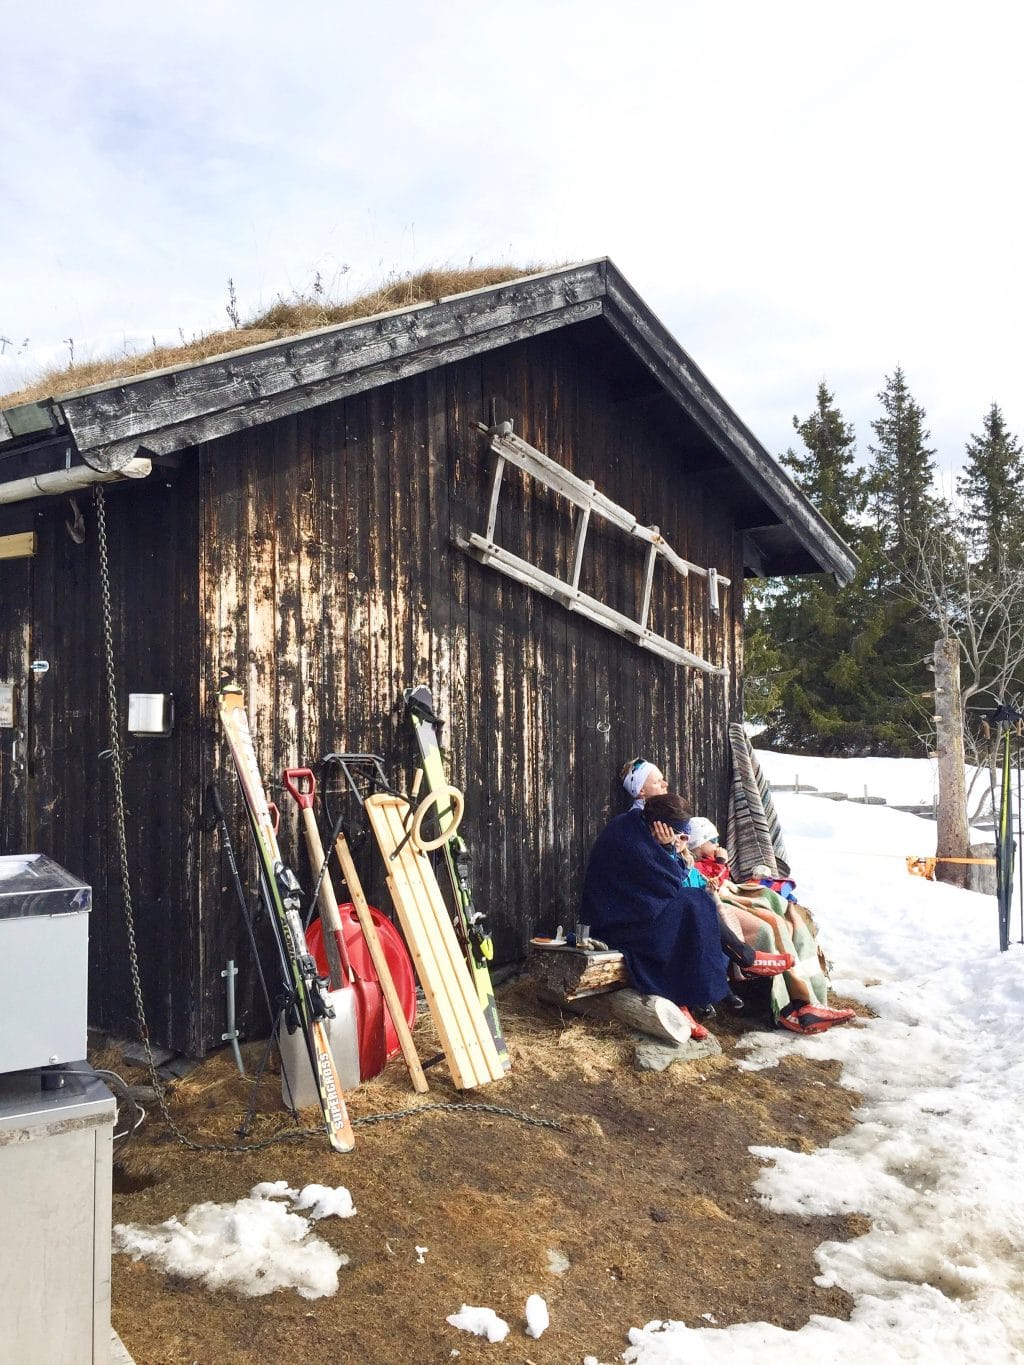 Skien in Noorwegen - Skeikampen (Svingvoll) made by ellen